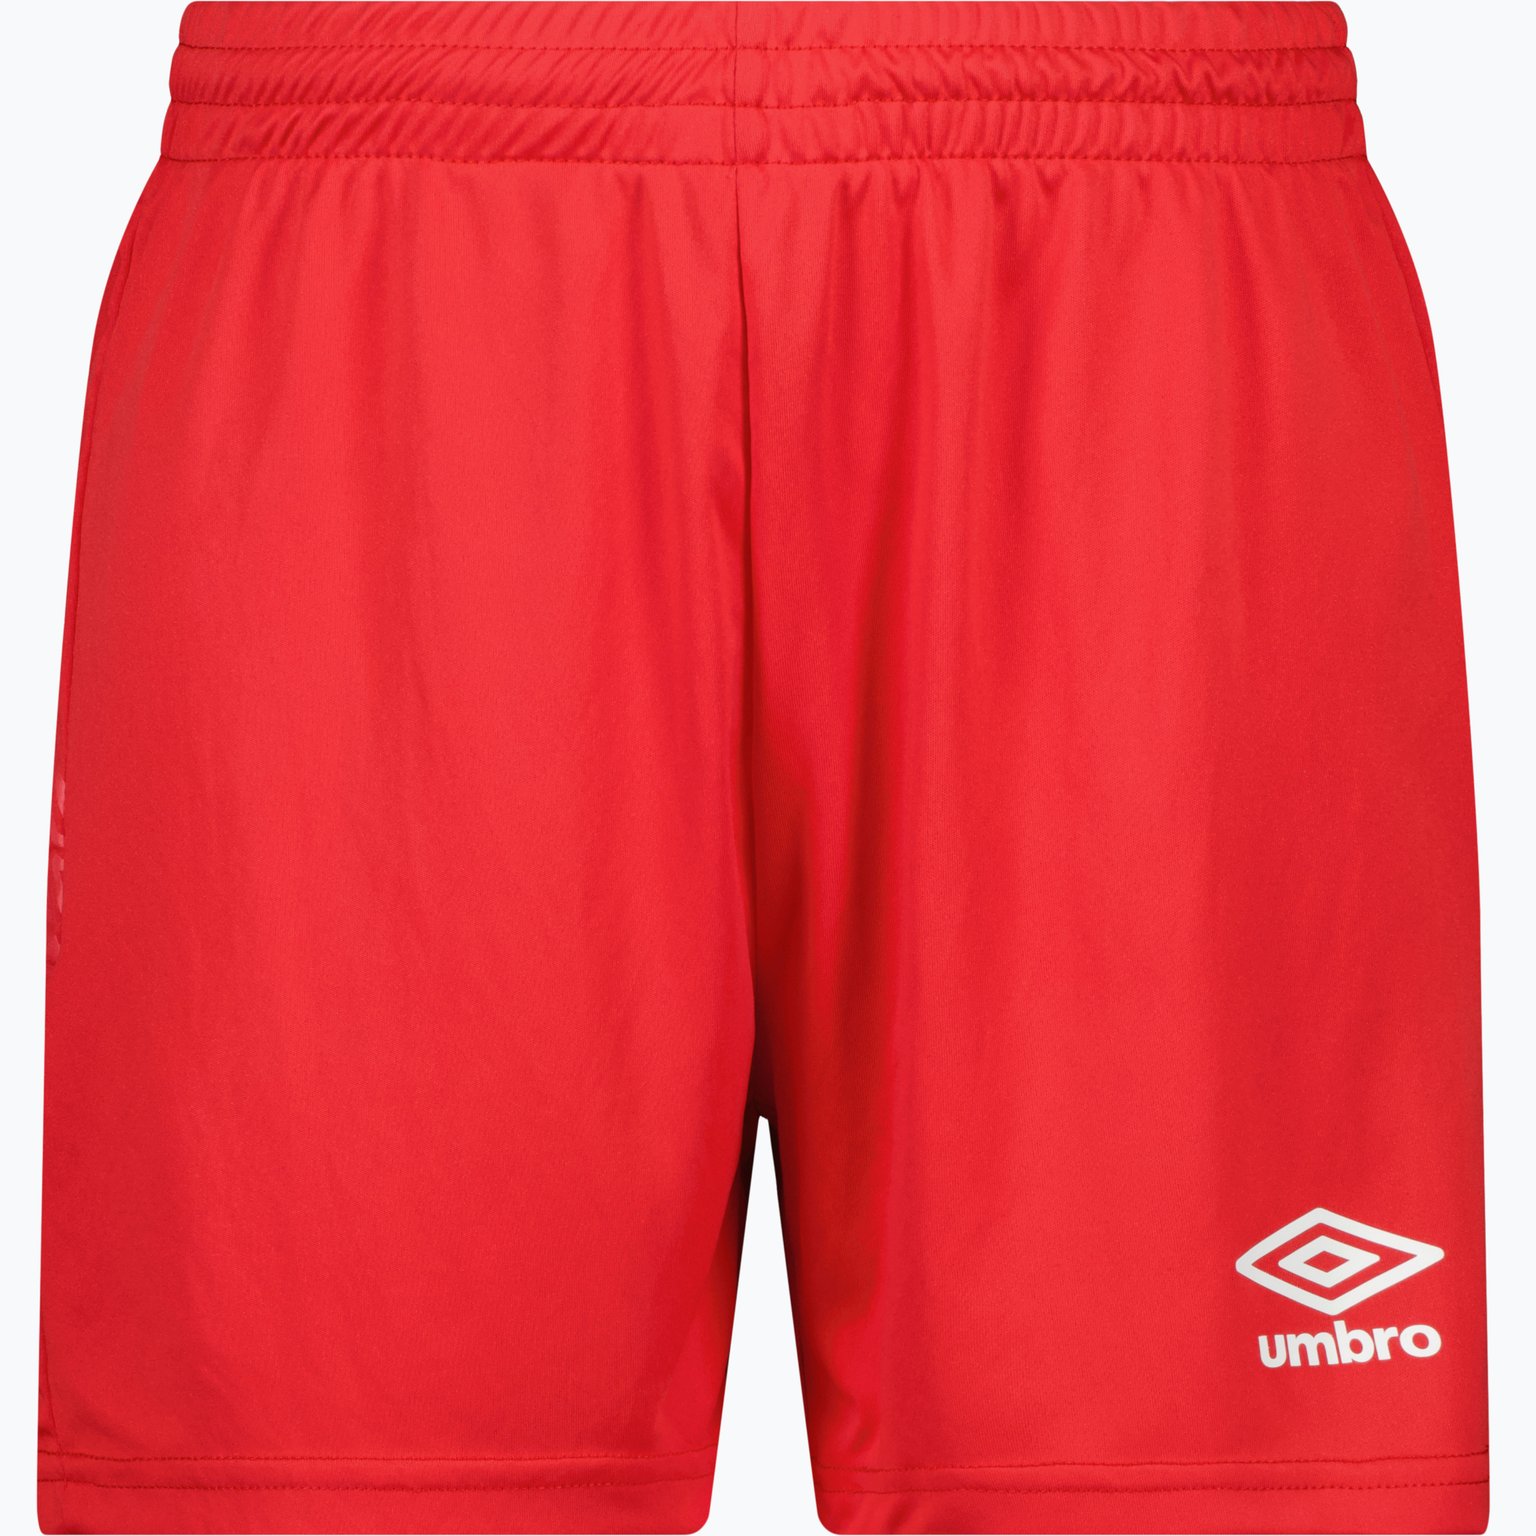 Liga W shorts